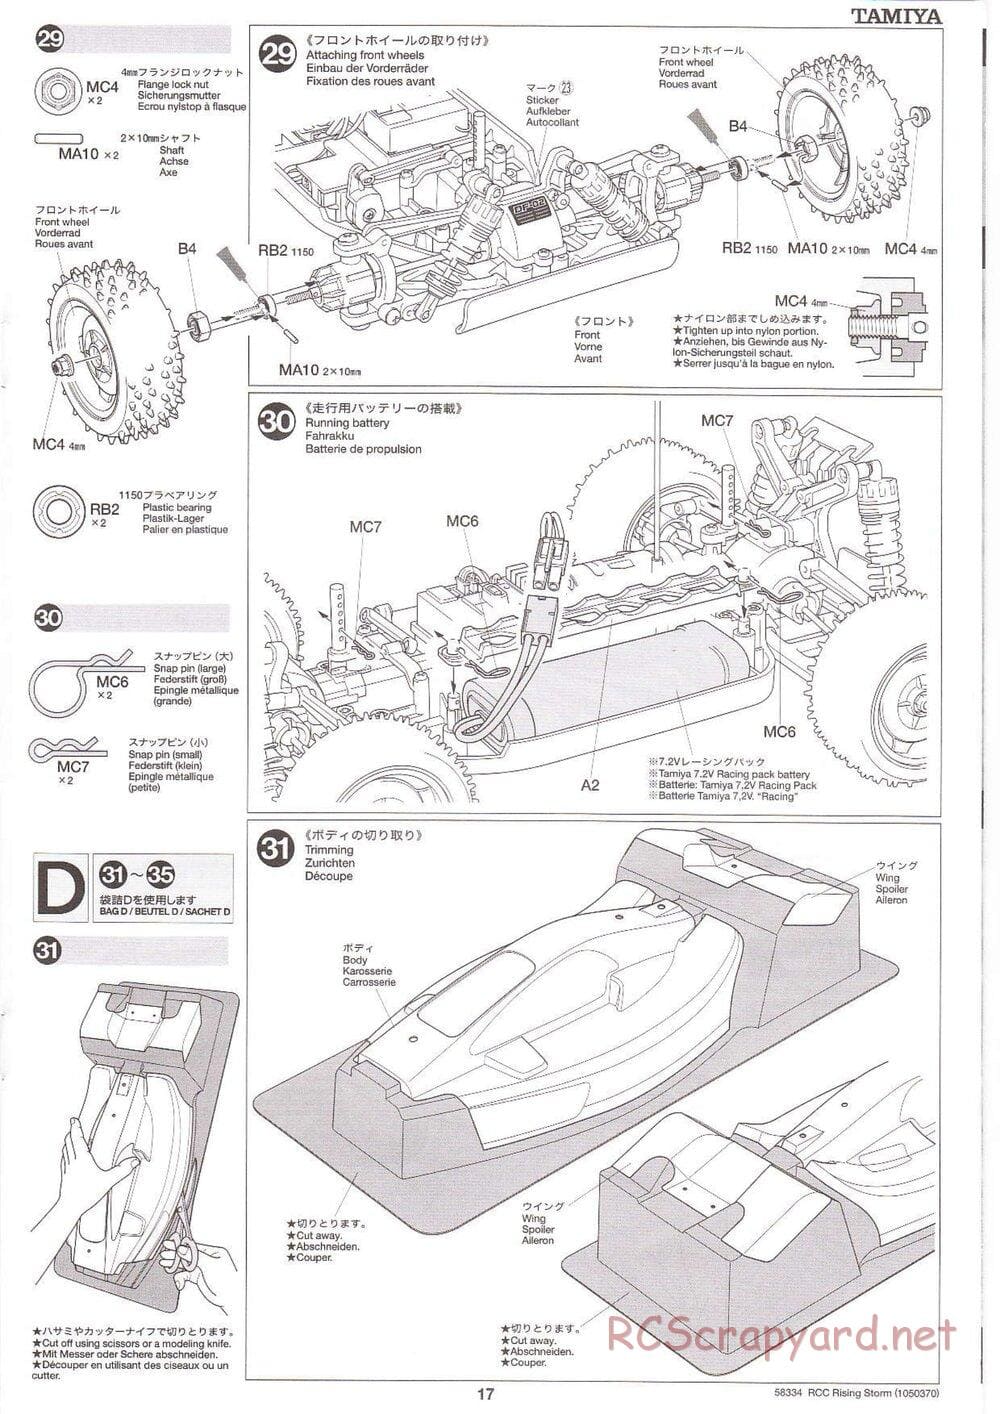 Tamiya - Rising Storm Chassis - Manual - Page 17